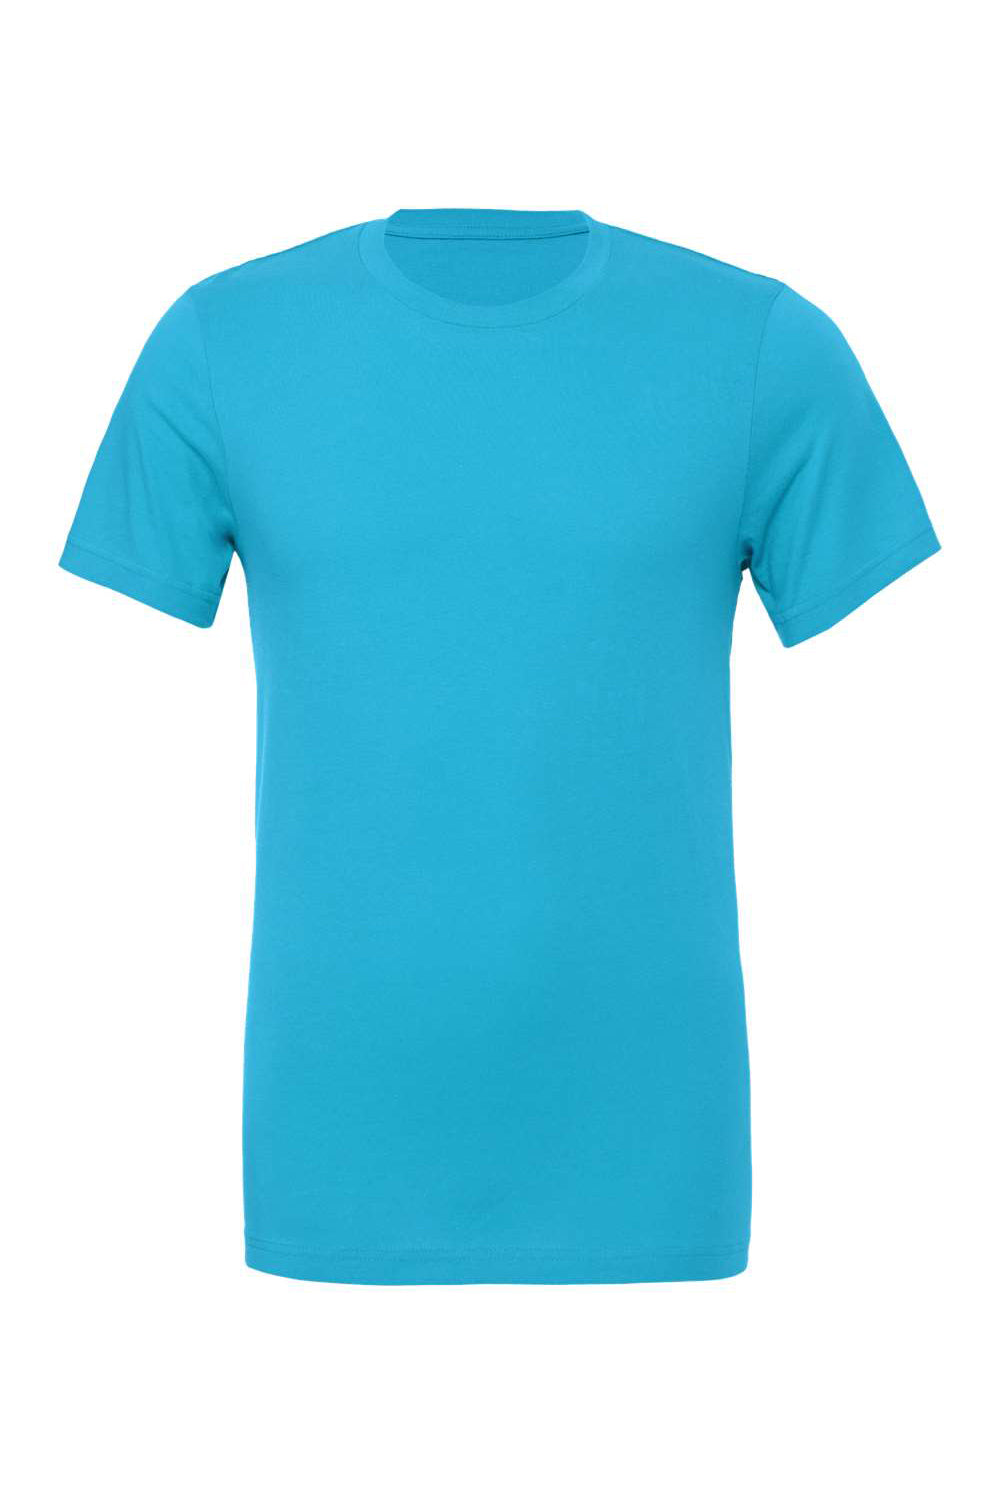 Bella + Canvas BC3001/3001C Mens Jersey Short Sleeve Crewneck T-Shirt Aqua Blue Flat Front